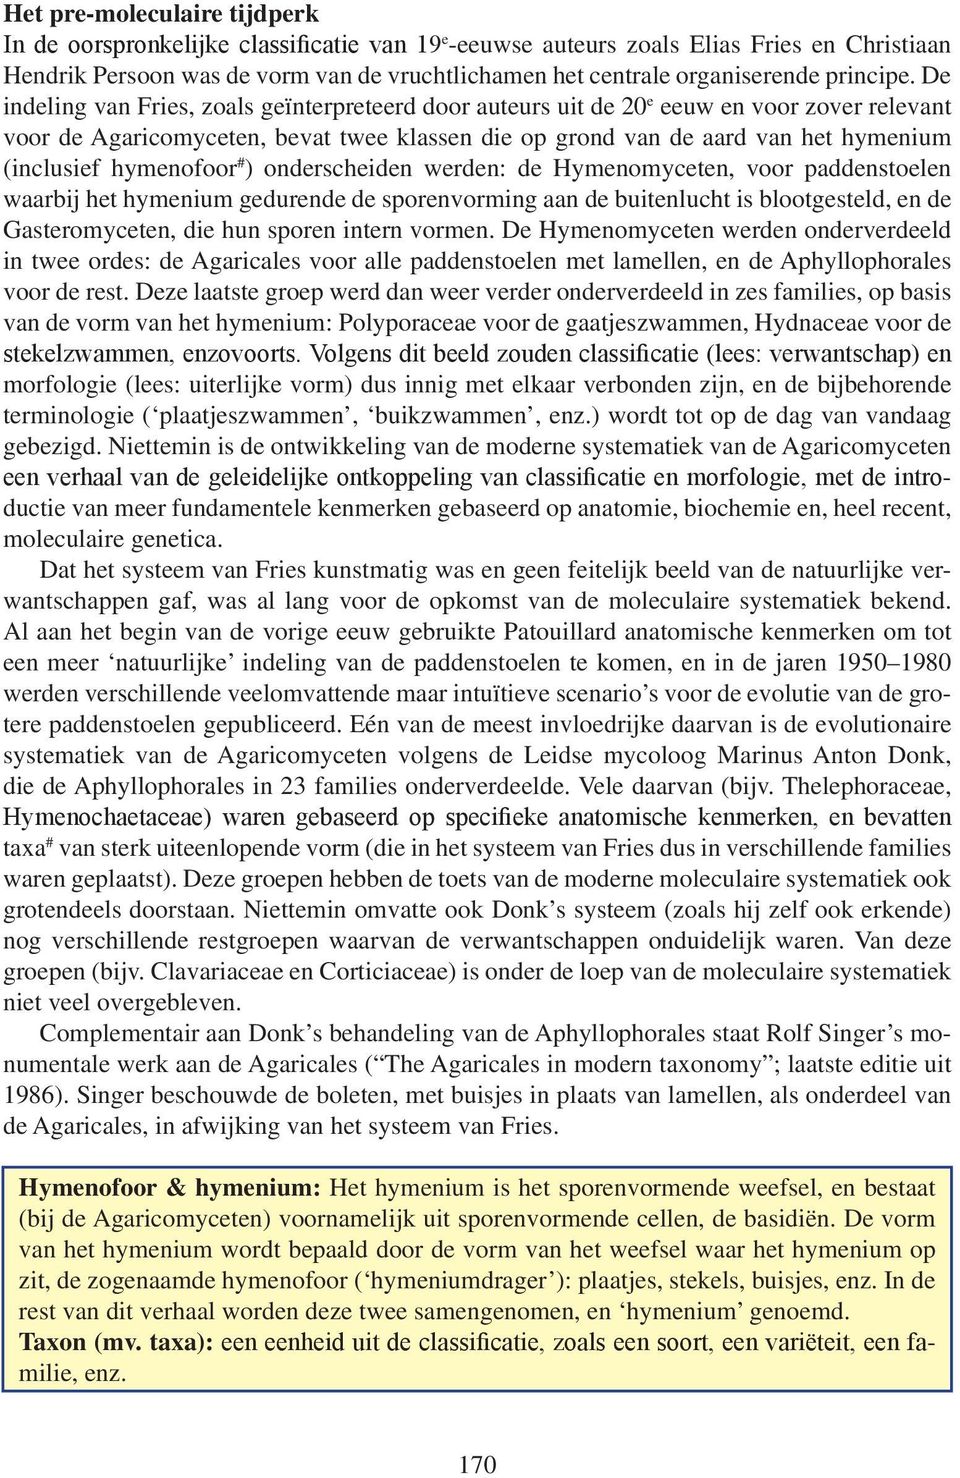 De indeling van Fries, zoals geïnterpreteerd door auteurs uit de 20 e eeuw en voor zover relevant voor de Agaricomyceten, bevat twee klassen die op grond van de aard van het hymenium (inclusief